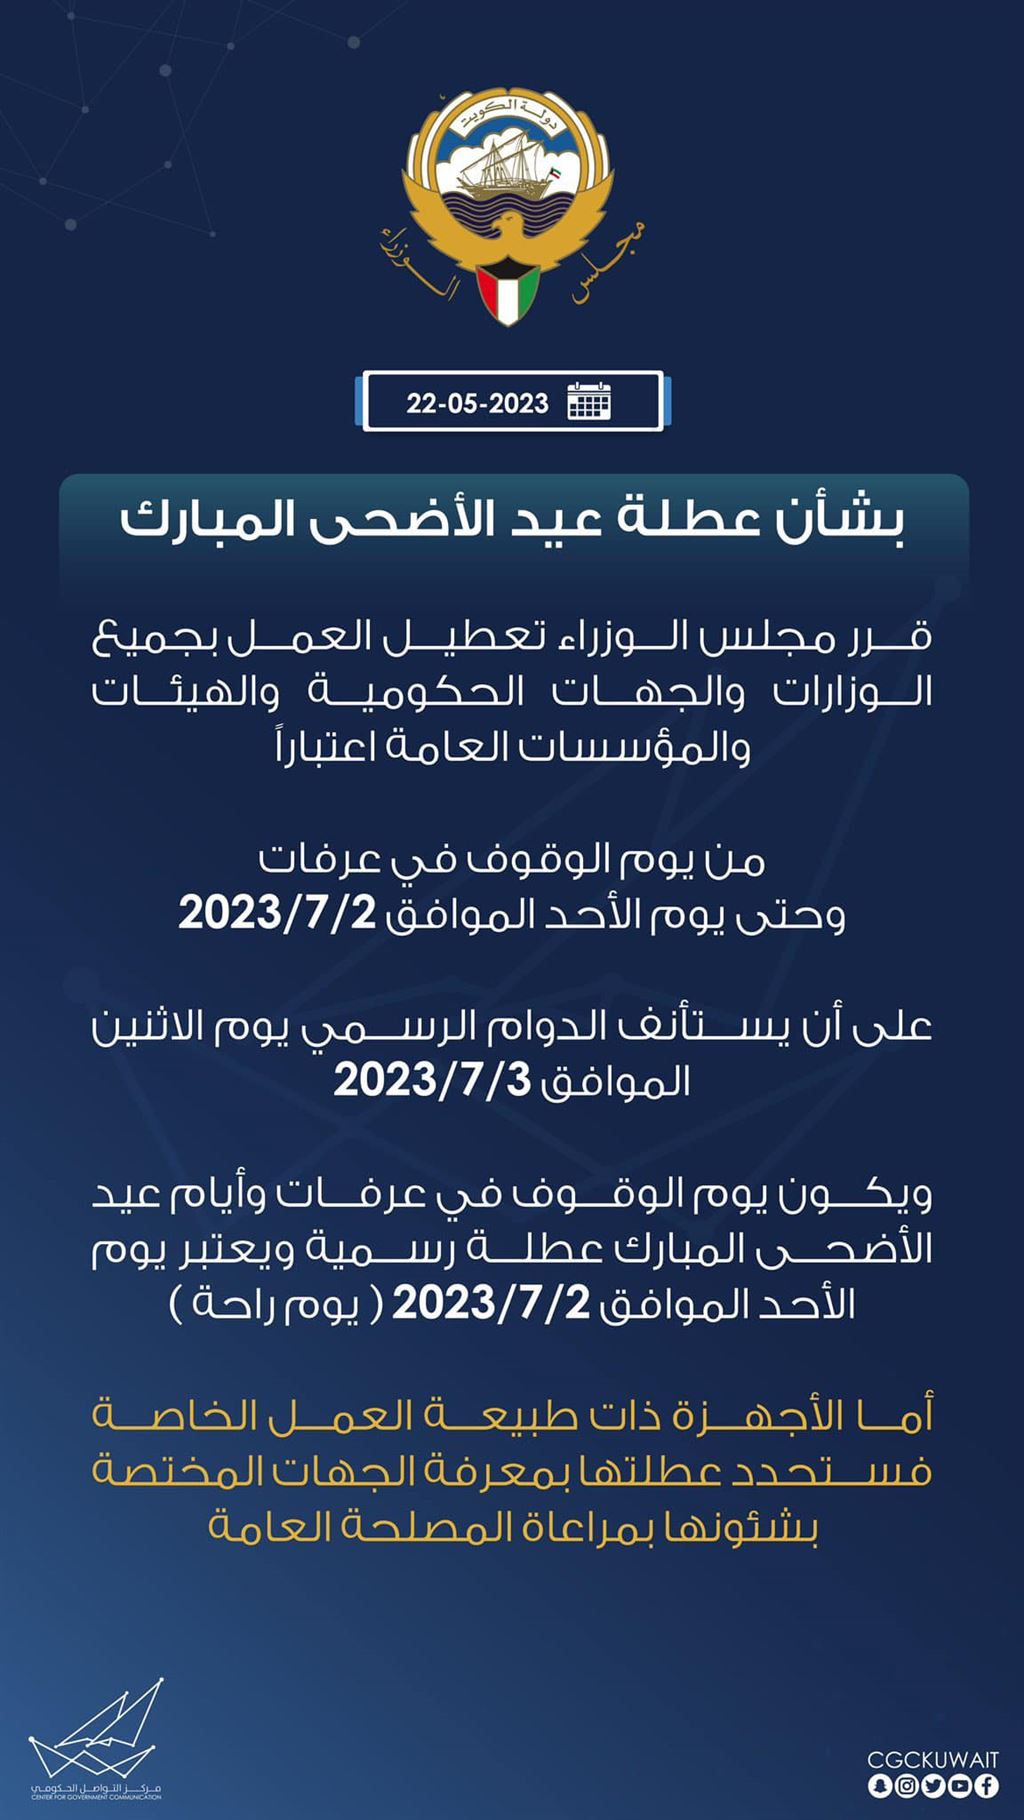 eid al adha holidays in kuwait 2023